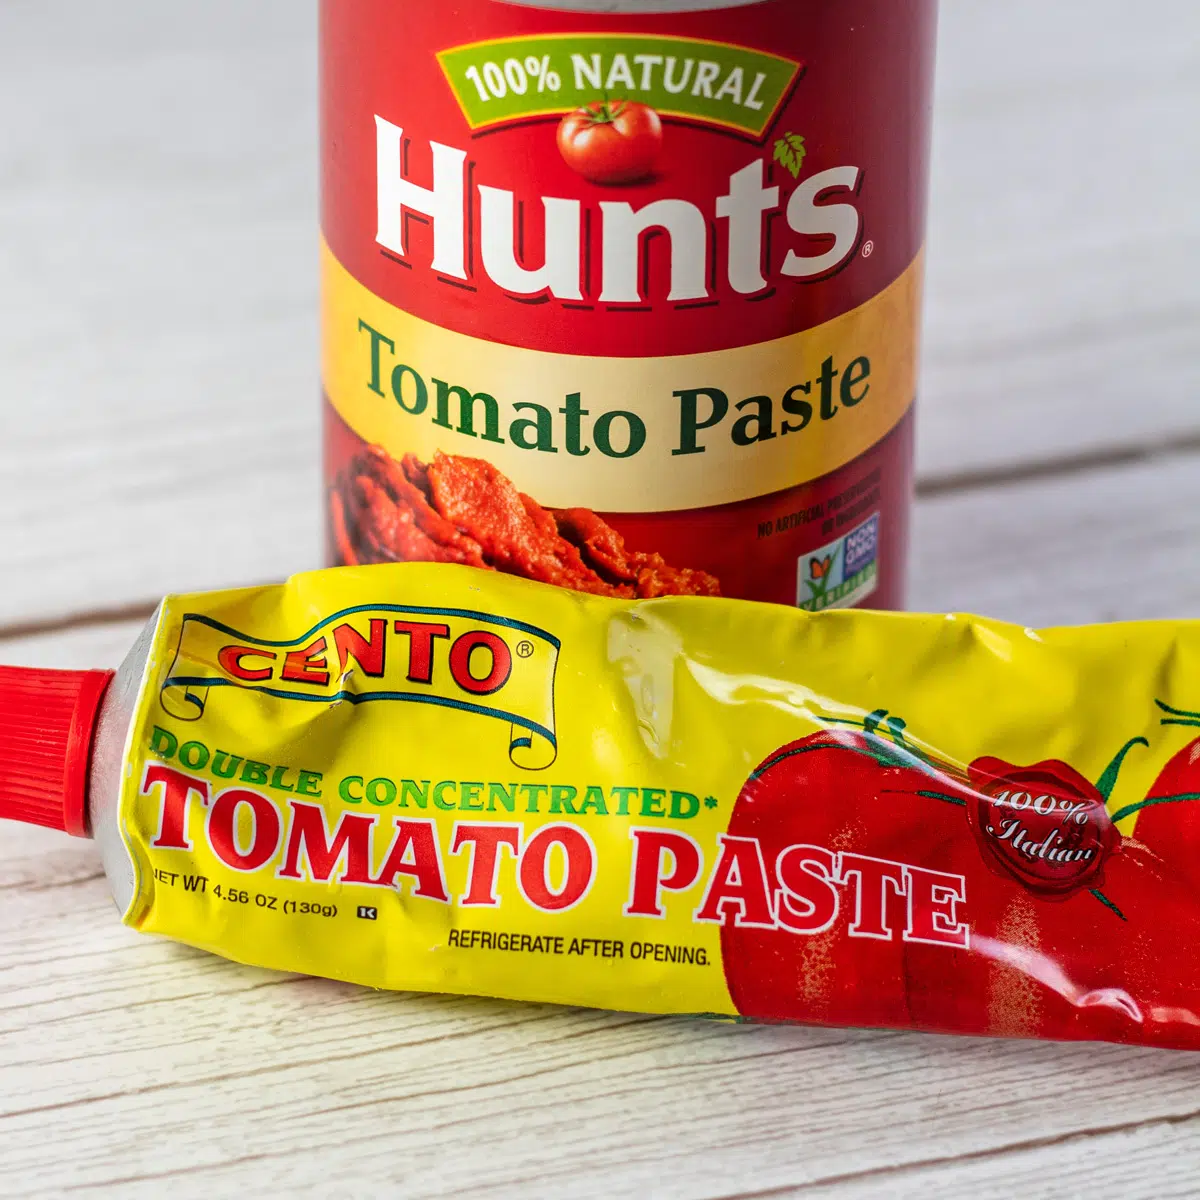 Melhor imagem substituta de pasta de tomate mostrando produtos de pasta de tomate.